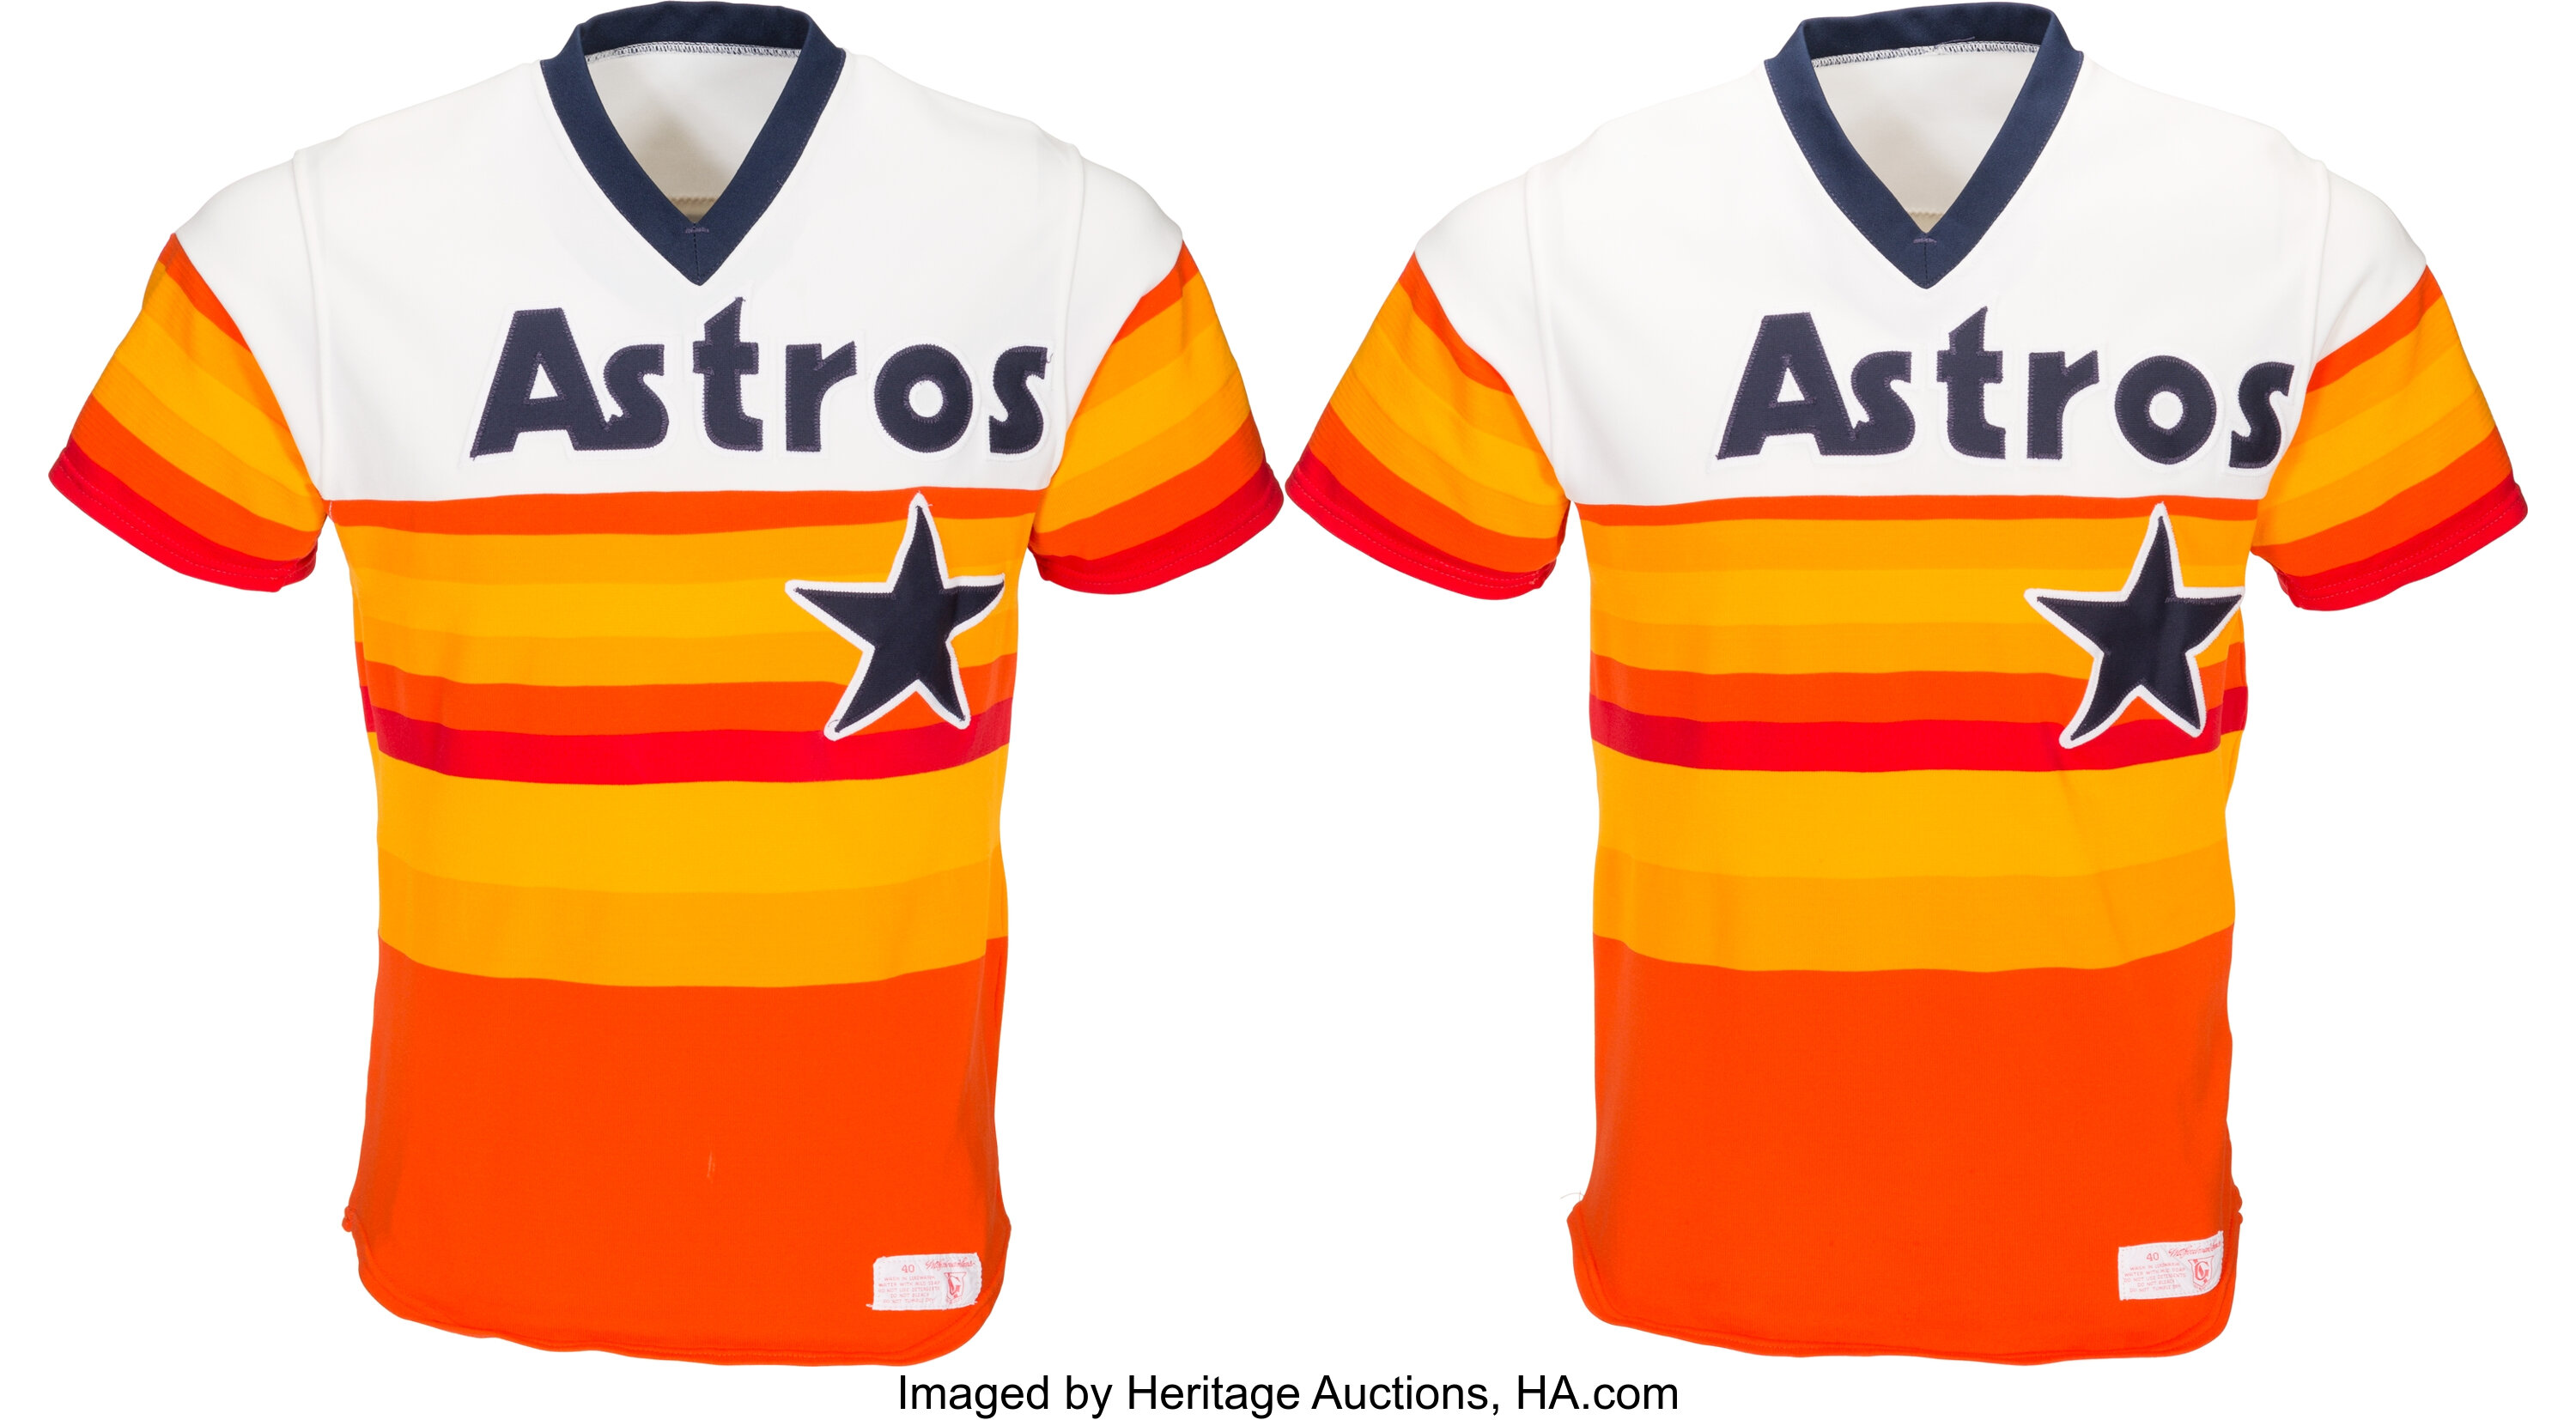 astros uniforms 1980s